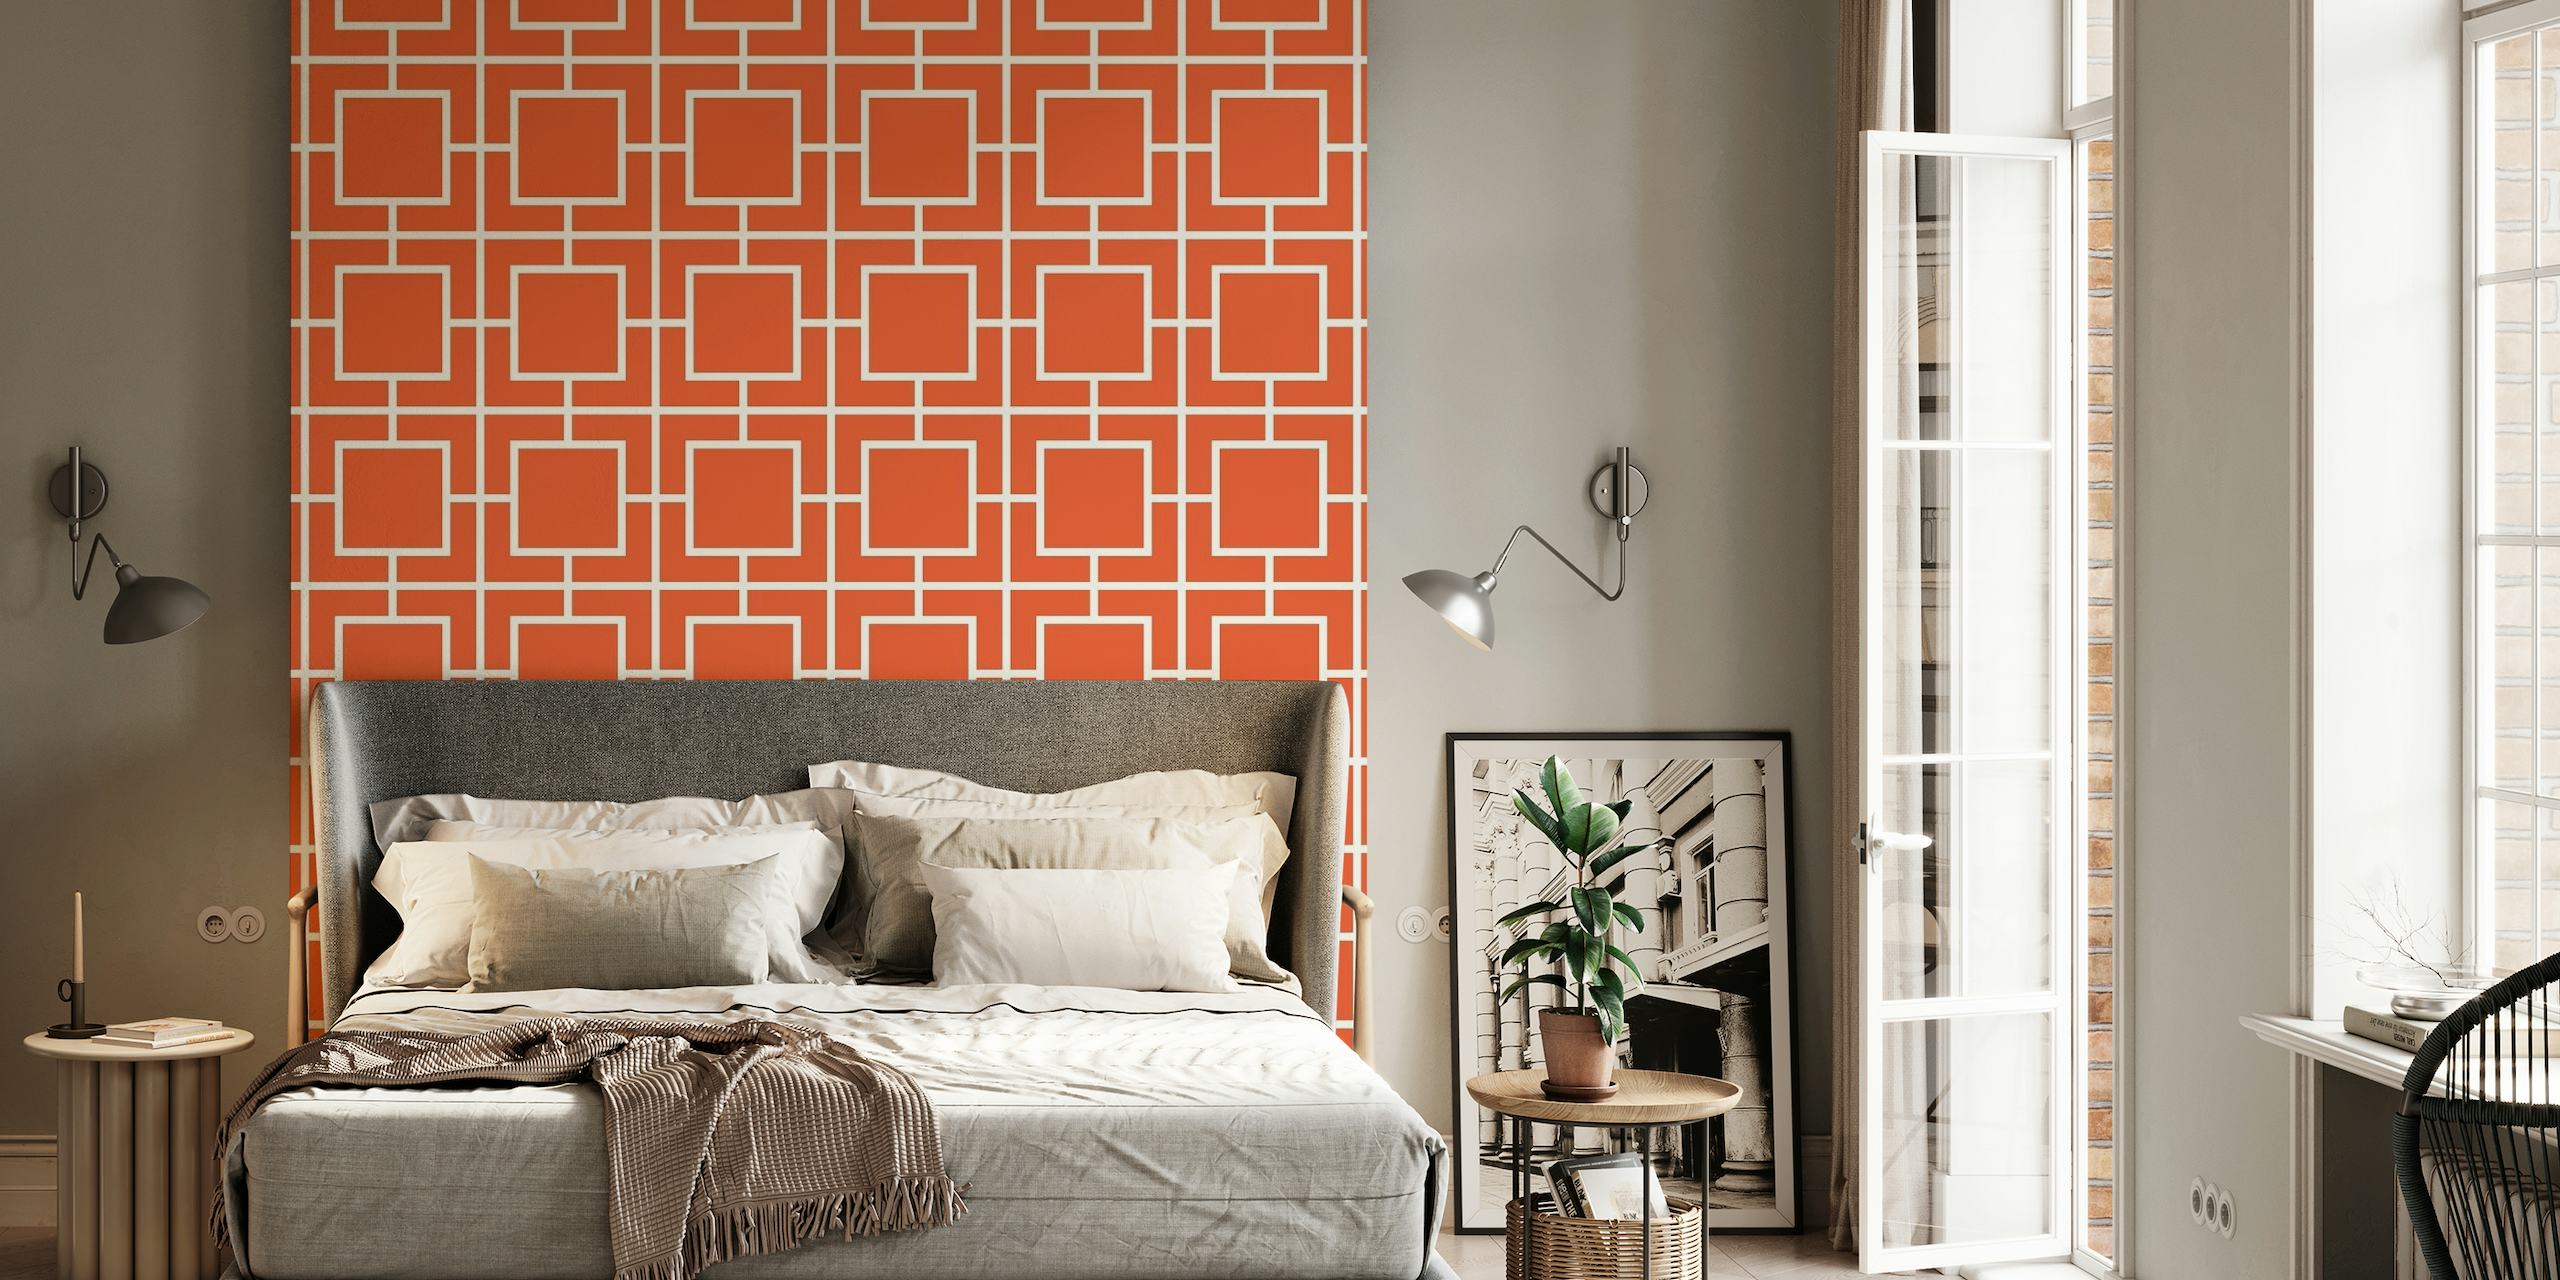 Spanish Brunt Orange Squares wallpaper